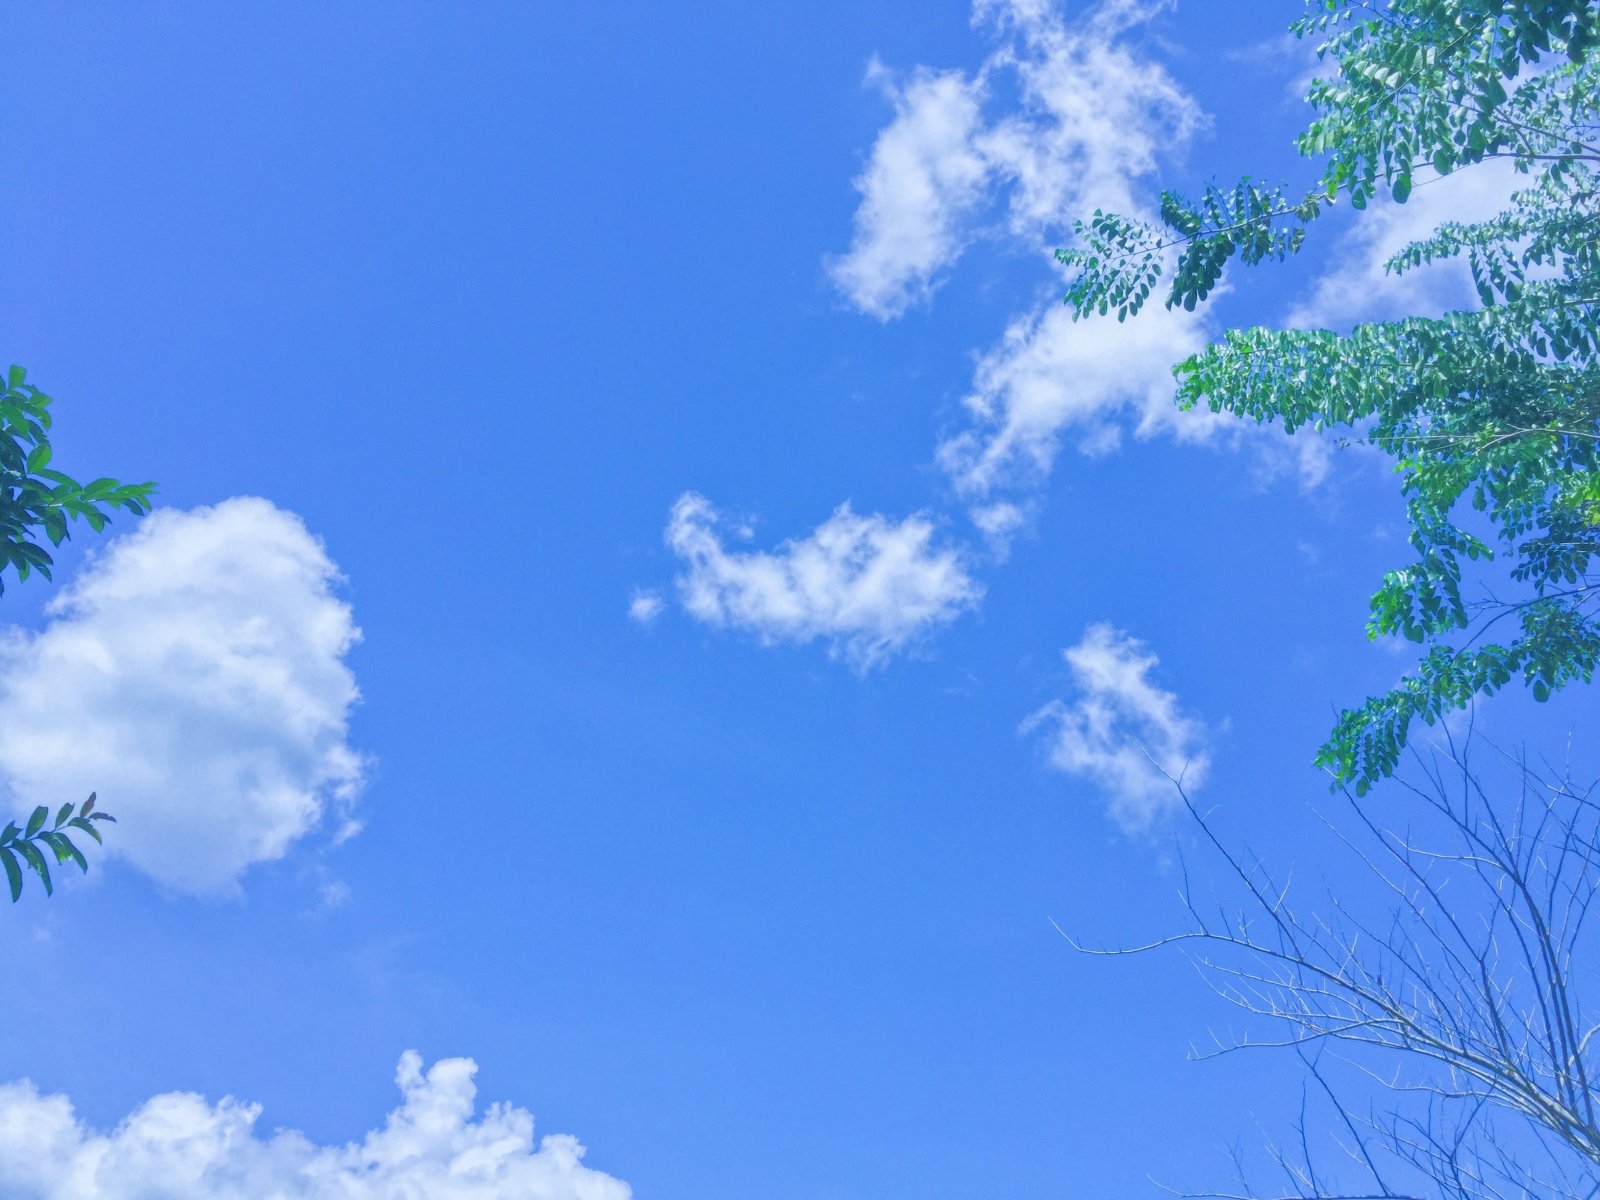 Áng mây là nơi tập trung của những sự tự do và phóng khoáng. Cùng áng mây bạn có thể có những trải nghiệm tràn đầy màu sắc và cảm nhận những sự thay đổi của cuộc sống. Hãy cùng chiêm ngưỡng hình ảnh đầy mê hoặc của áng mây.